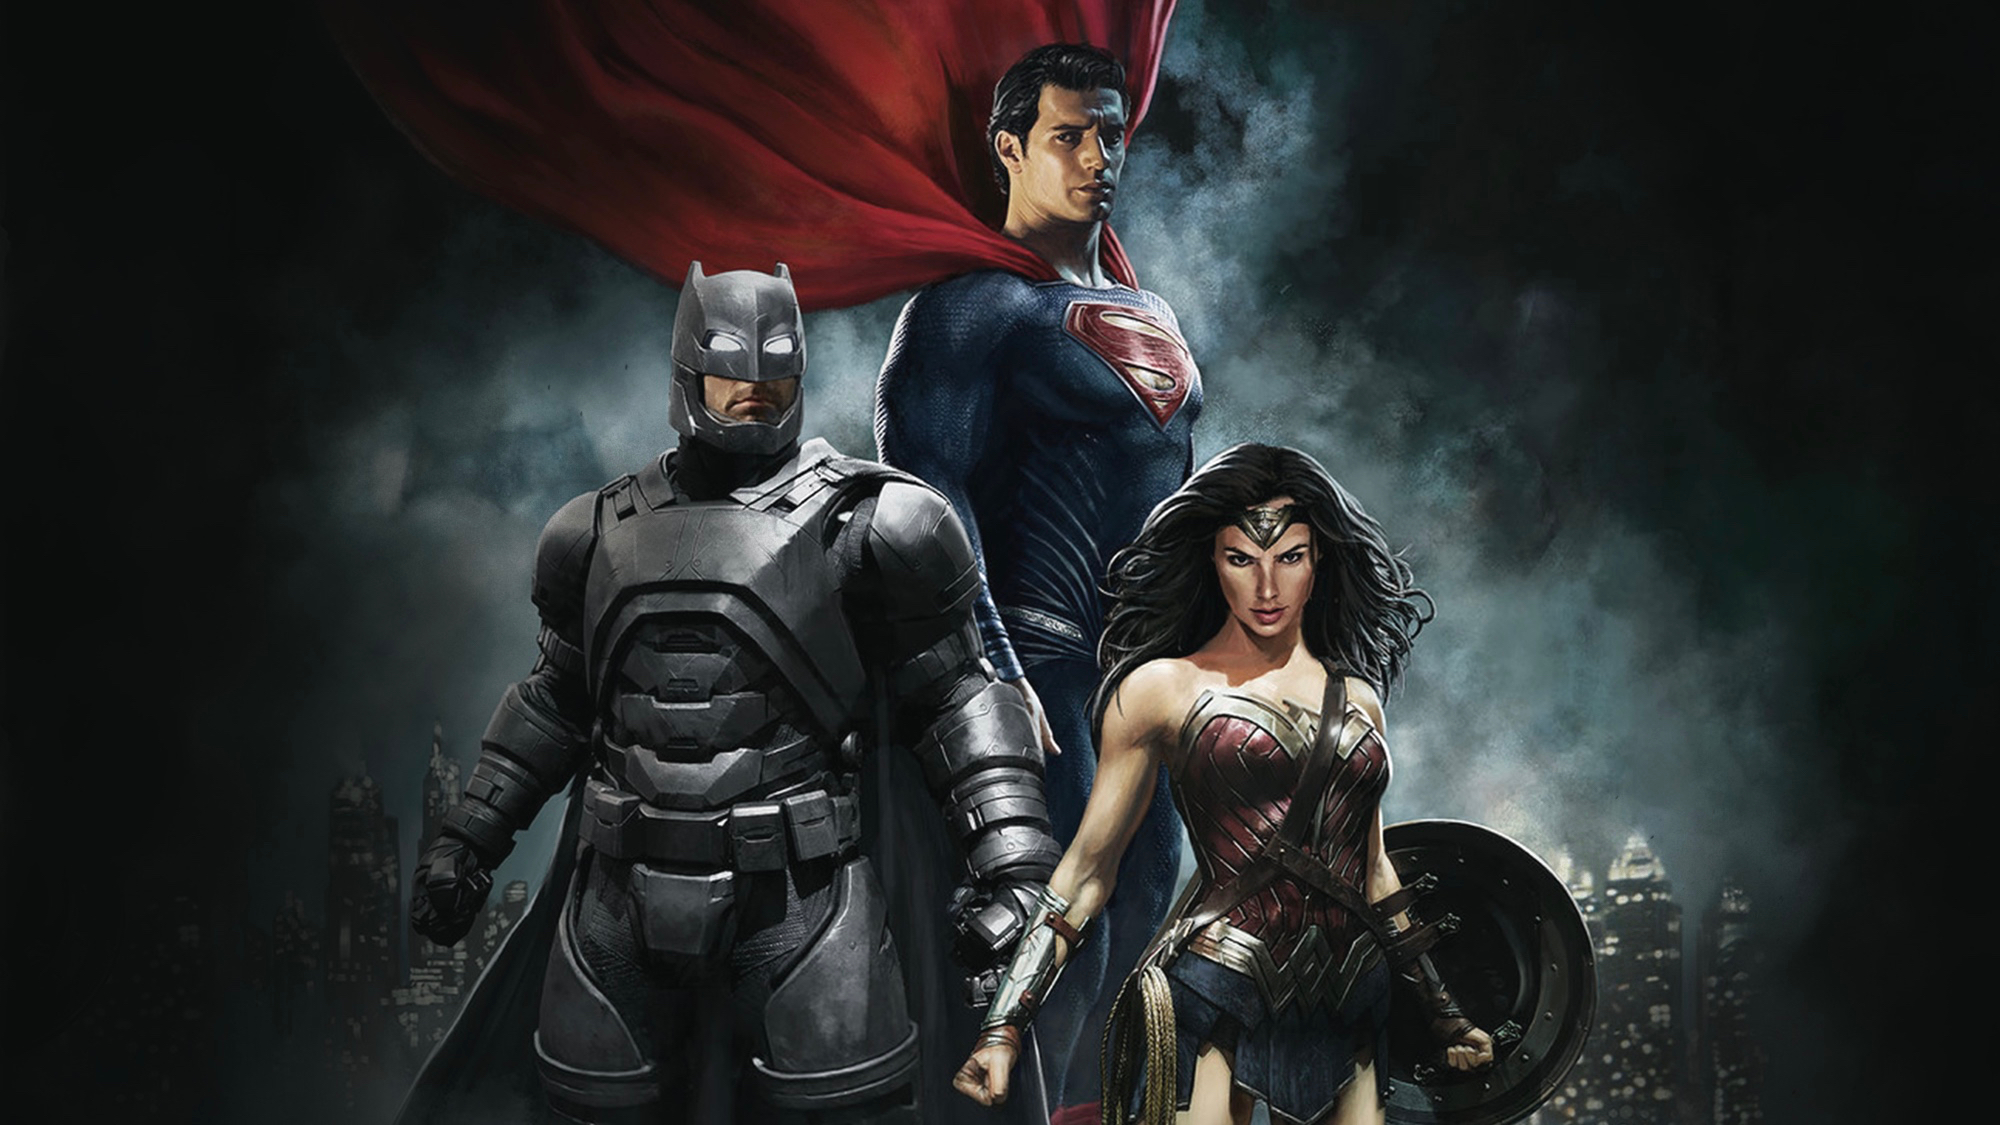 Скачать обои бесплатно Кино, Бэтмен, Супермен, Чудо Женщина, Галь Гадот, Генри Кавилл, Бэтмен Против Супермена: На Заре Справедливости картинка на рабочий стол ПК